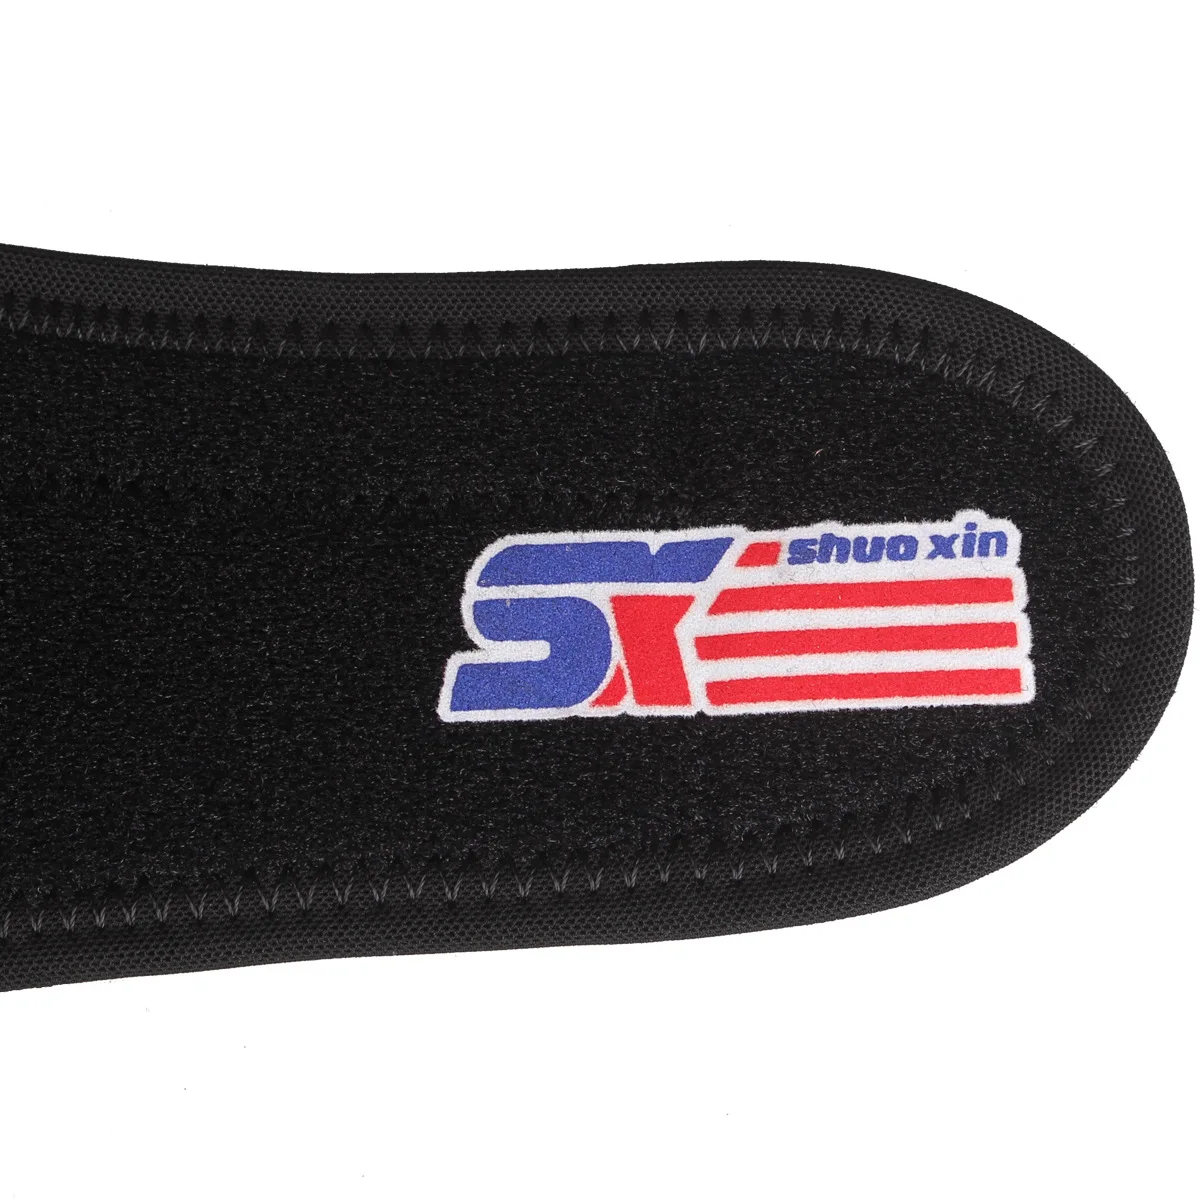 Регулируемый силиконовый дышащий спортивный налокотник Sx606 черный в одной упаковке от AliExpress WW